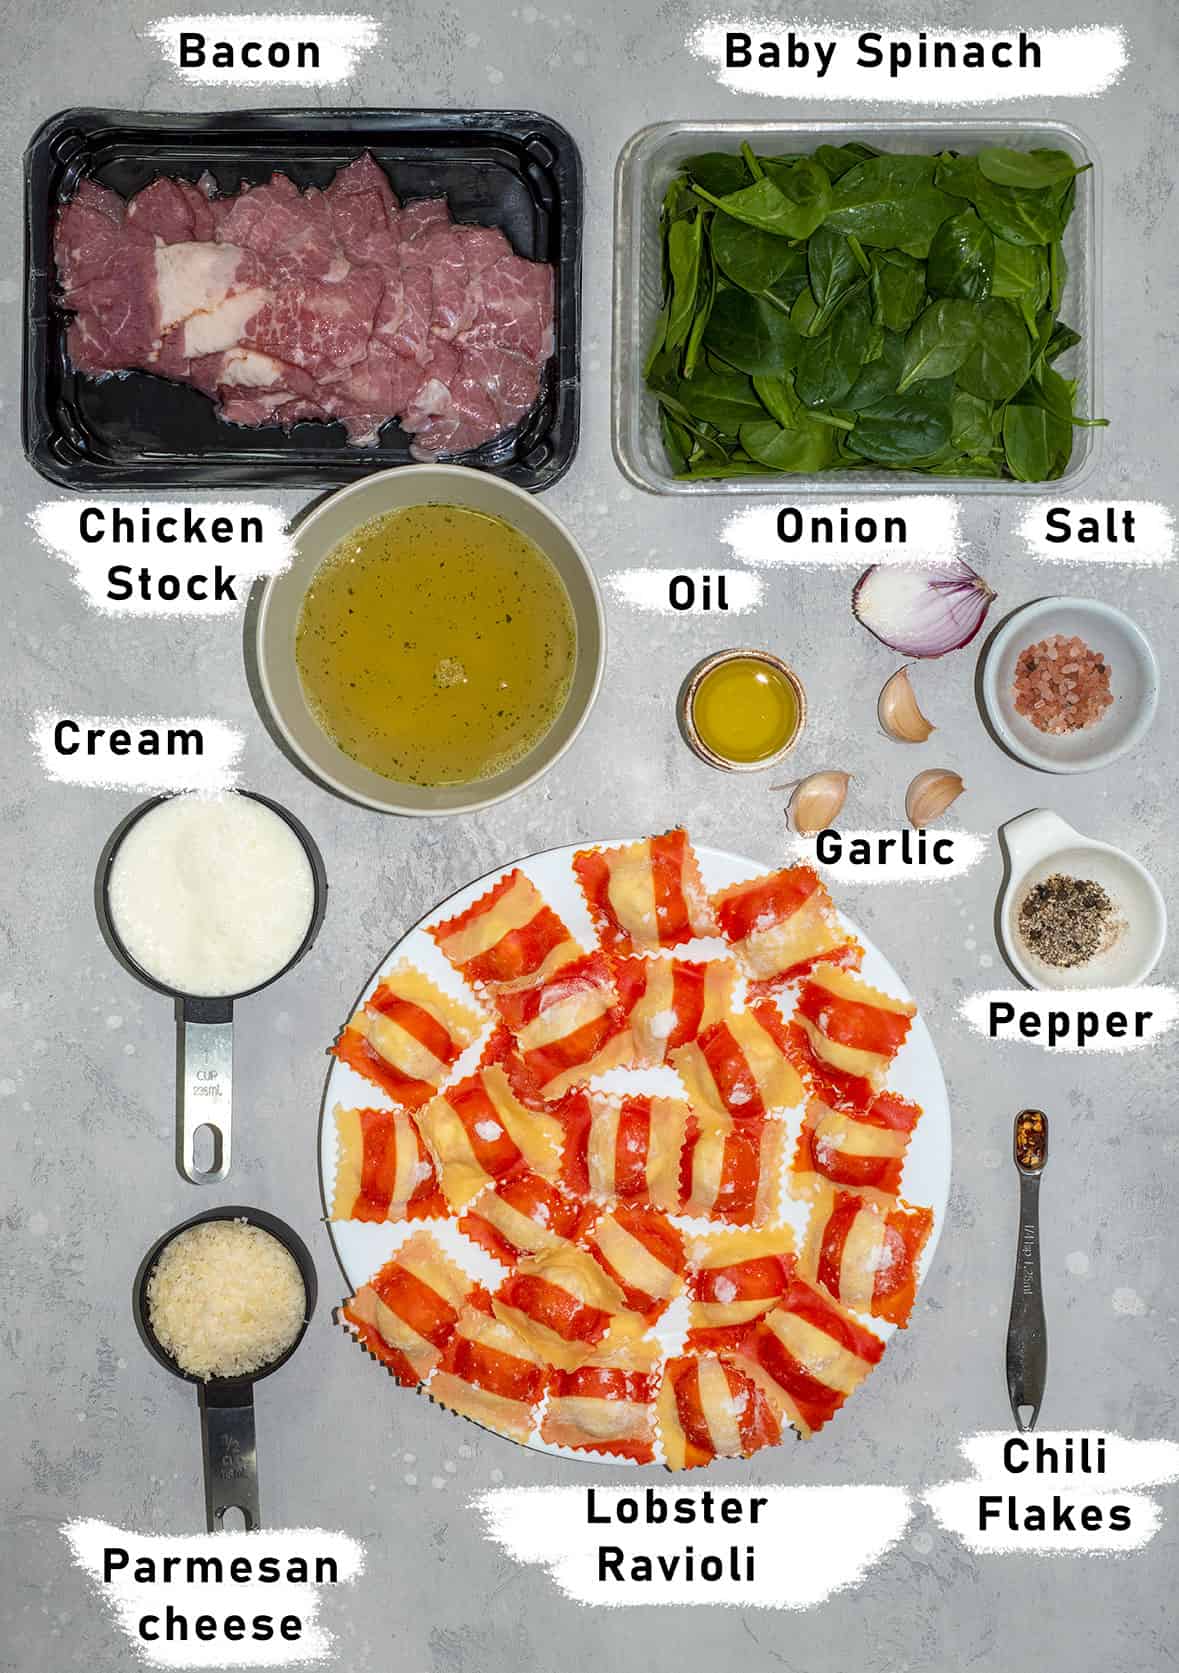 lobster ravioli sauce ingredients